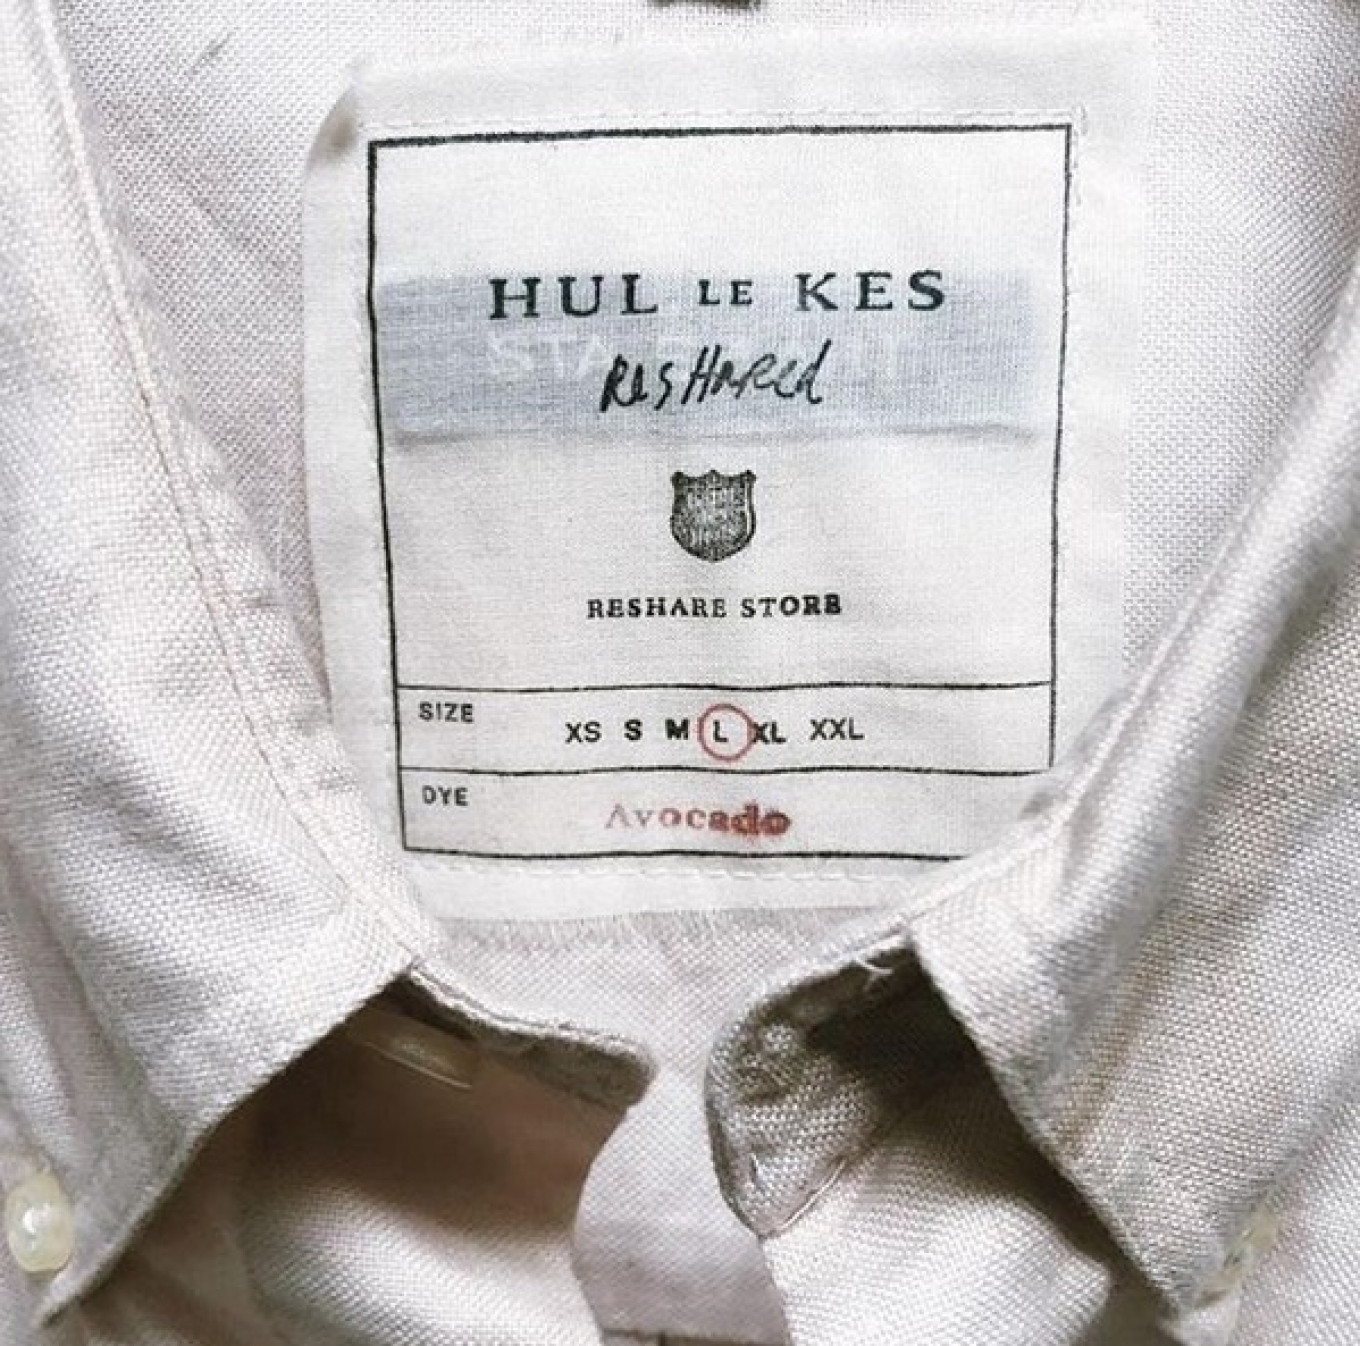 In de labels van de Hul le Kes ReShare items staat aangegeven met welke natuurlijke stoffen ze zijn geverfd. 